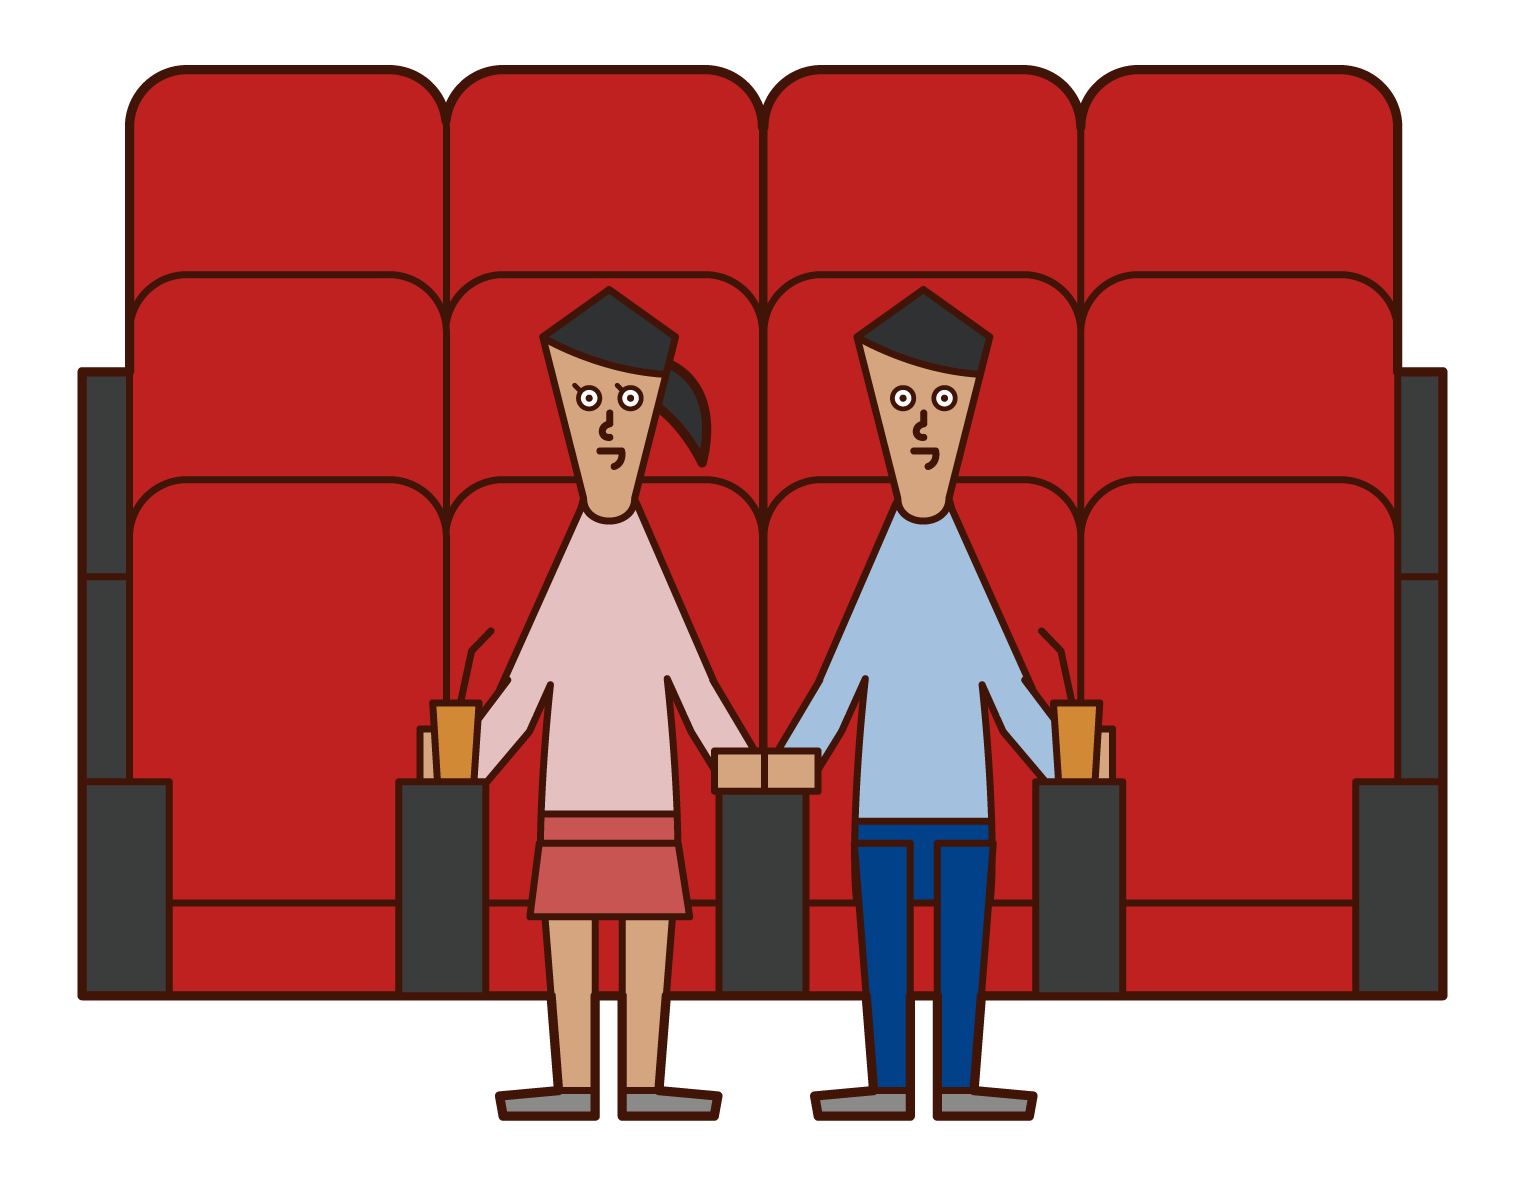 映画館で映画を見る人たちのイラスト フリーイラスト素材 Kukukeke ククケケ